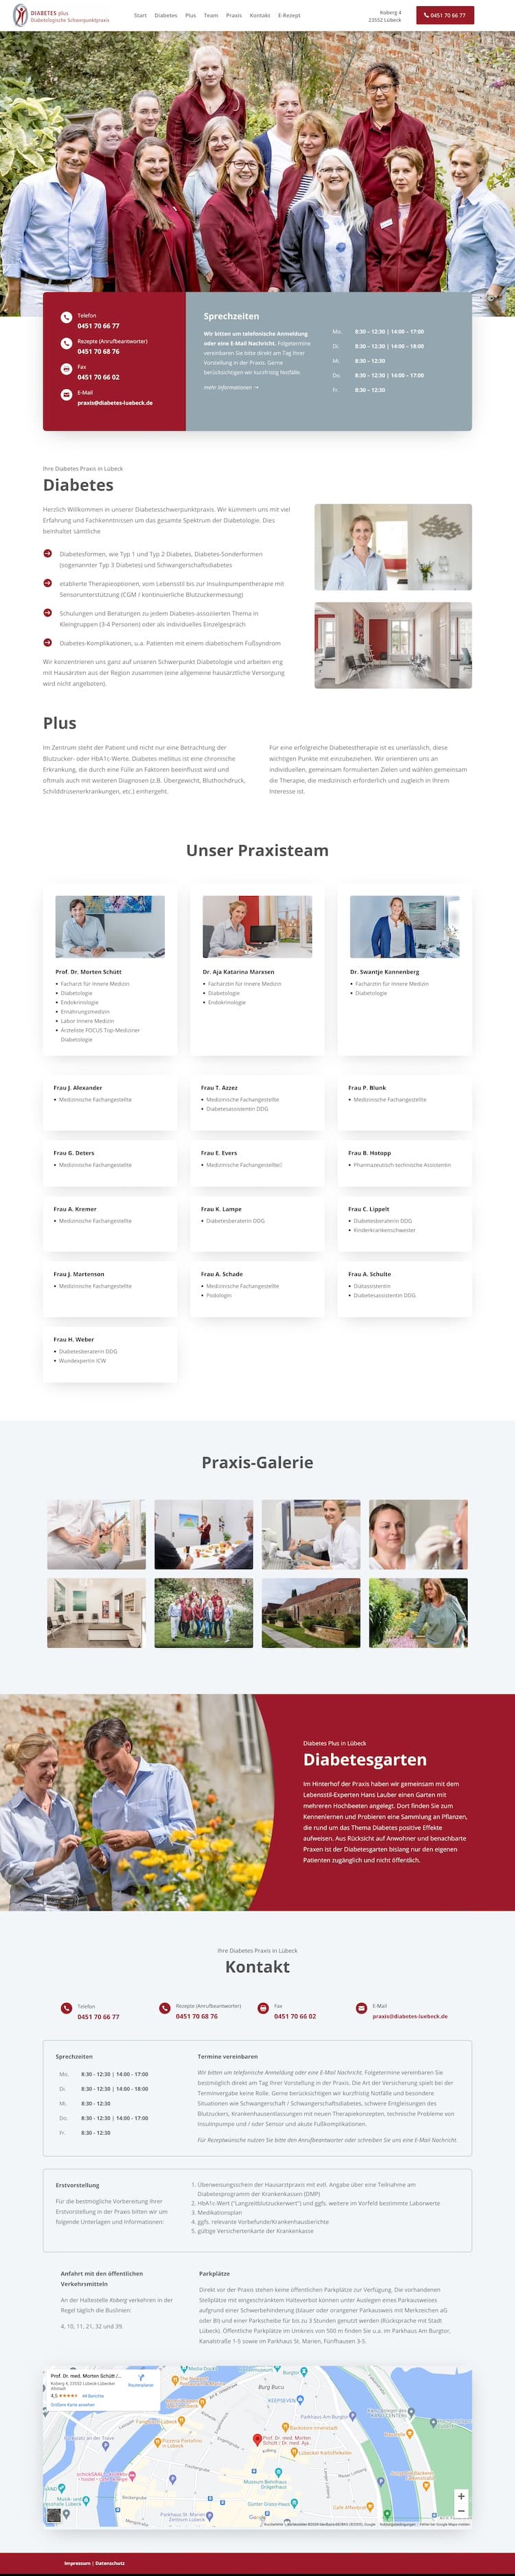 Ein Bildschirmfoto von der Startseite der One Page Praxiswebsite für Diabestes plus